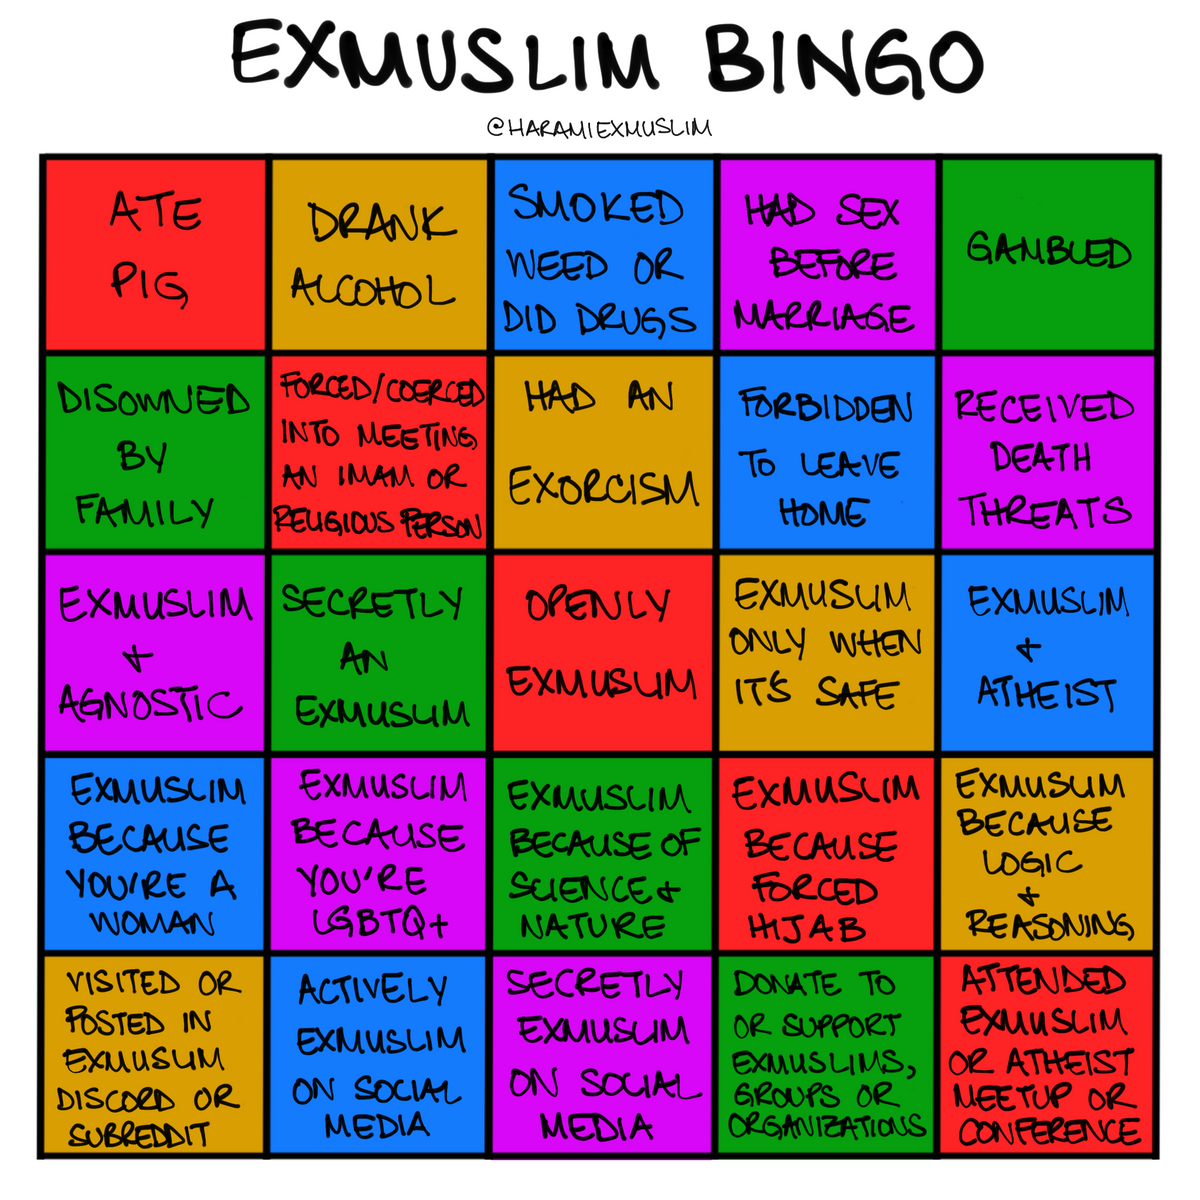 ExMuslim Bingo